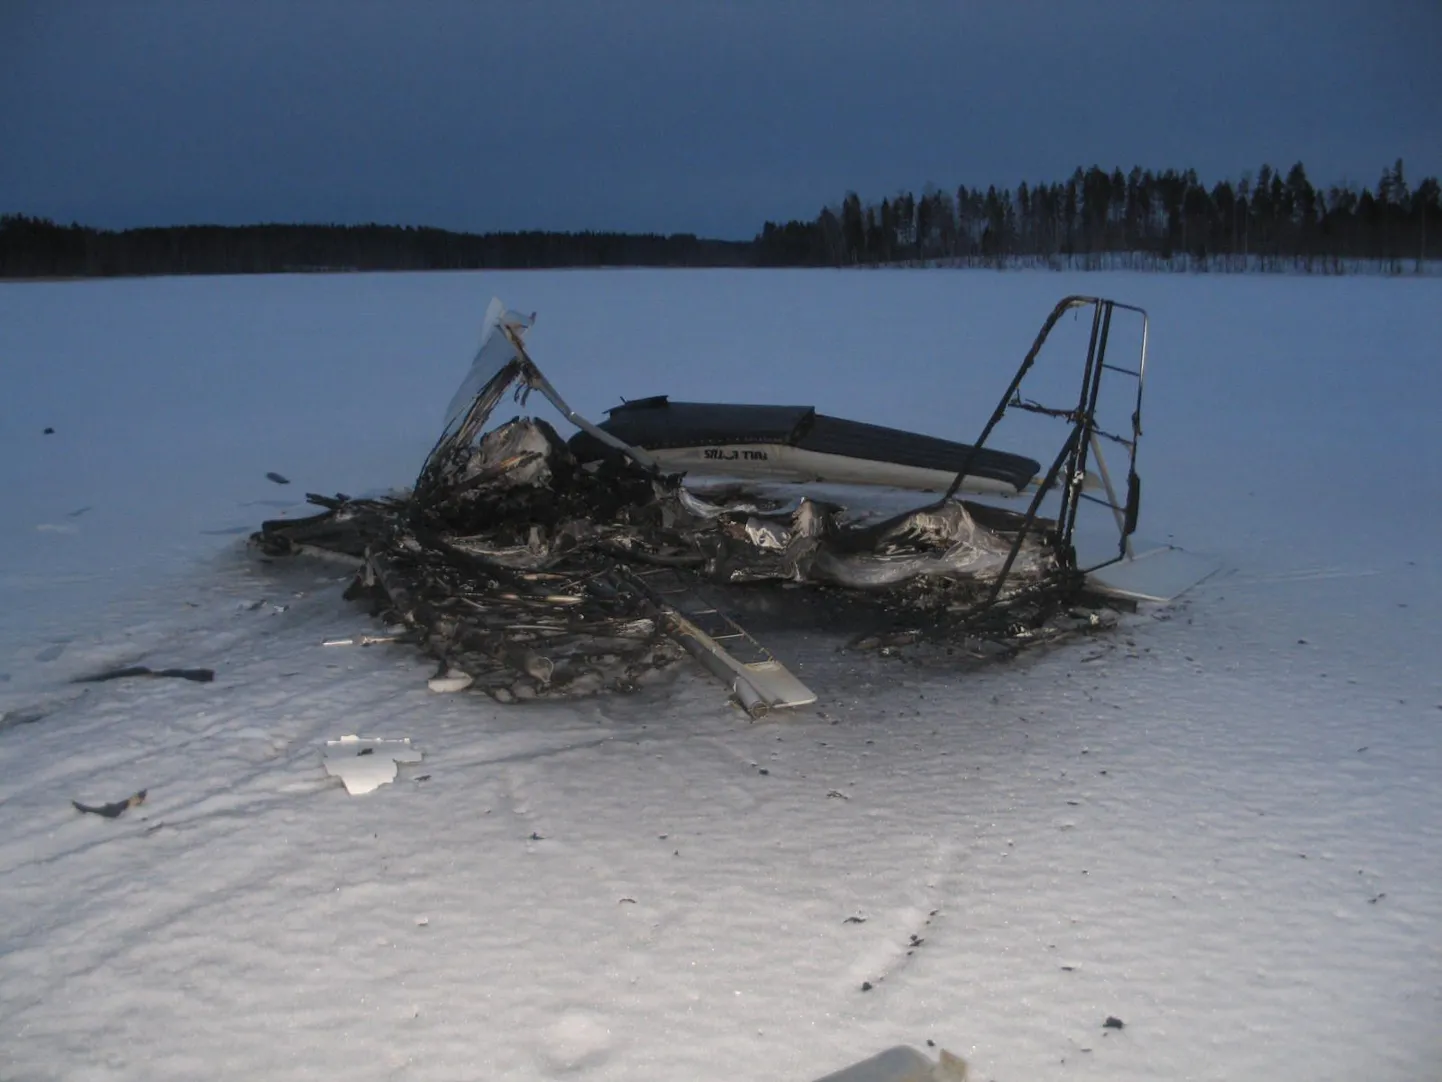 Lennukirusud Pyhäselkä järve jääl.